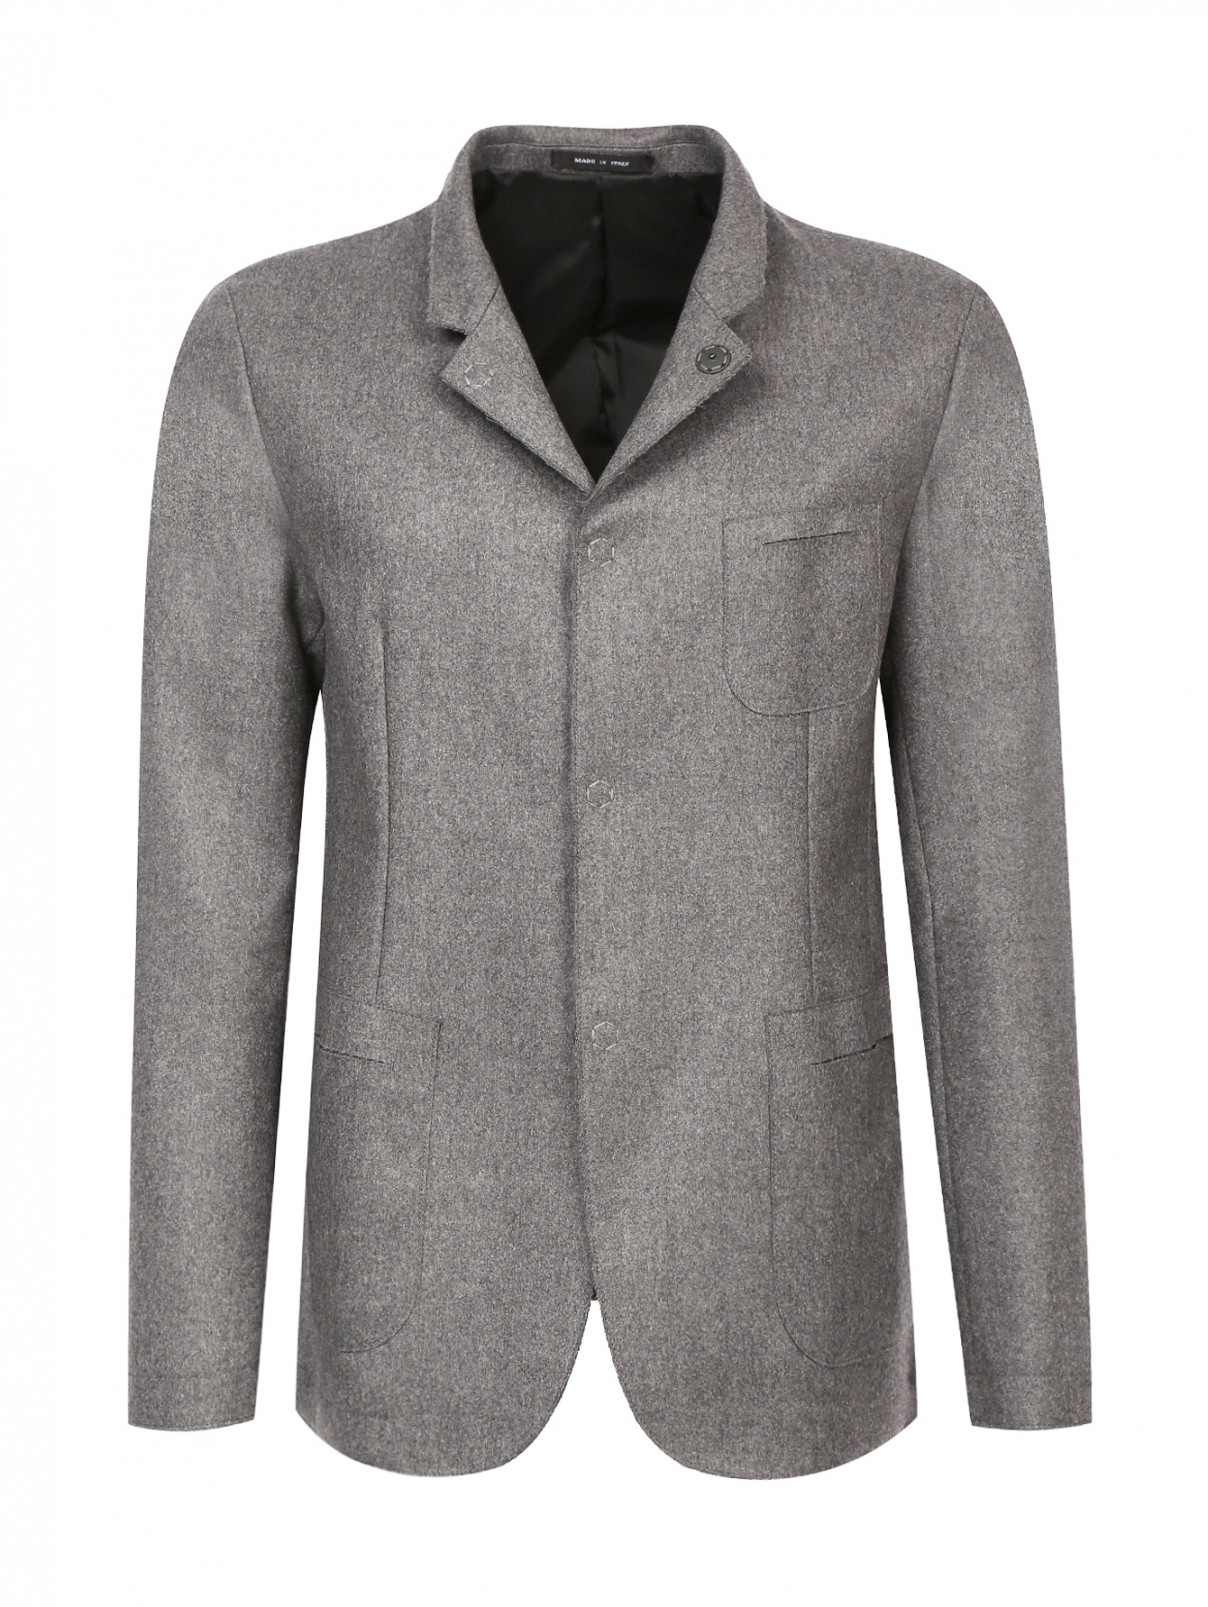 Однобортный пиджак из шерсти Emporio Armani  –  Общий вид  – Цвет:  Серый